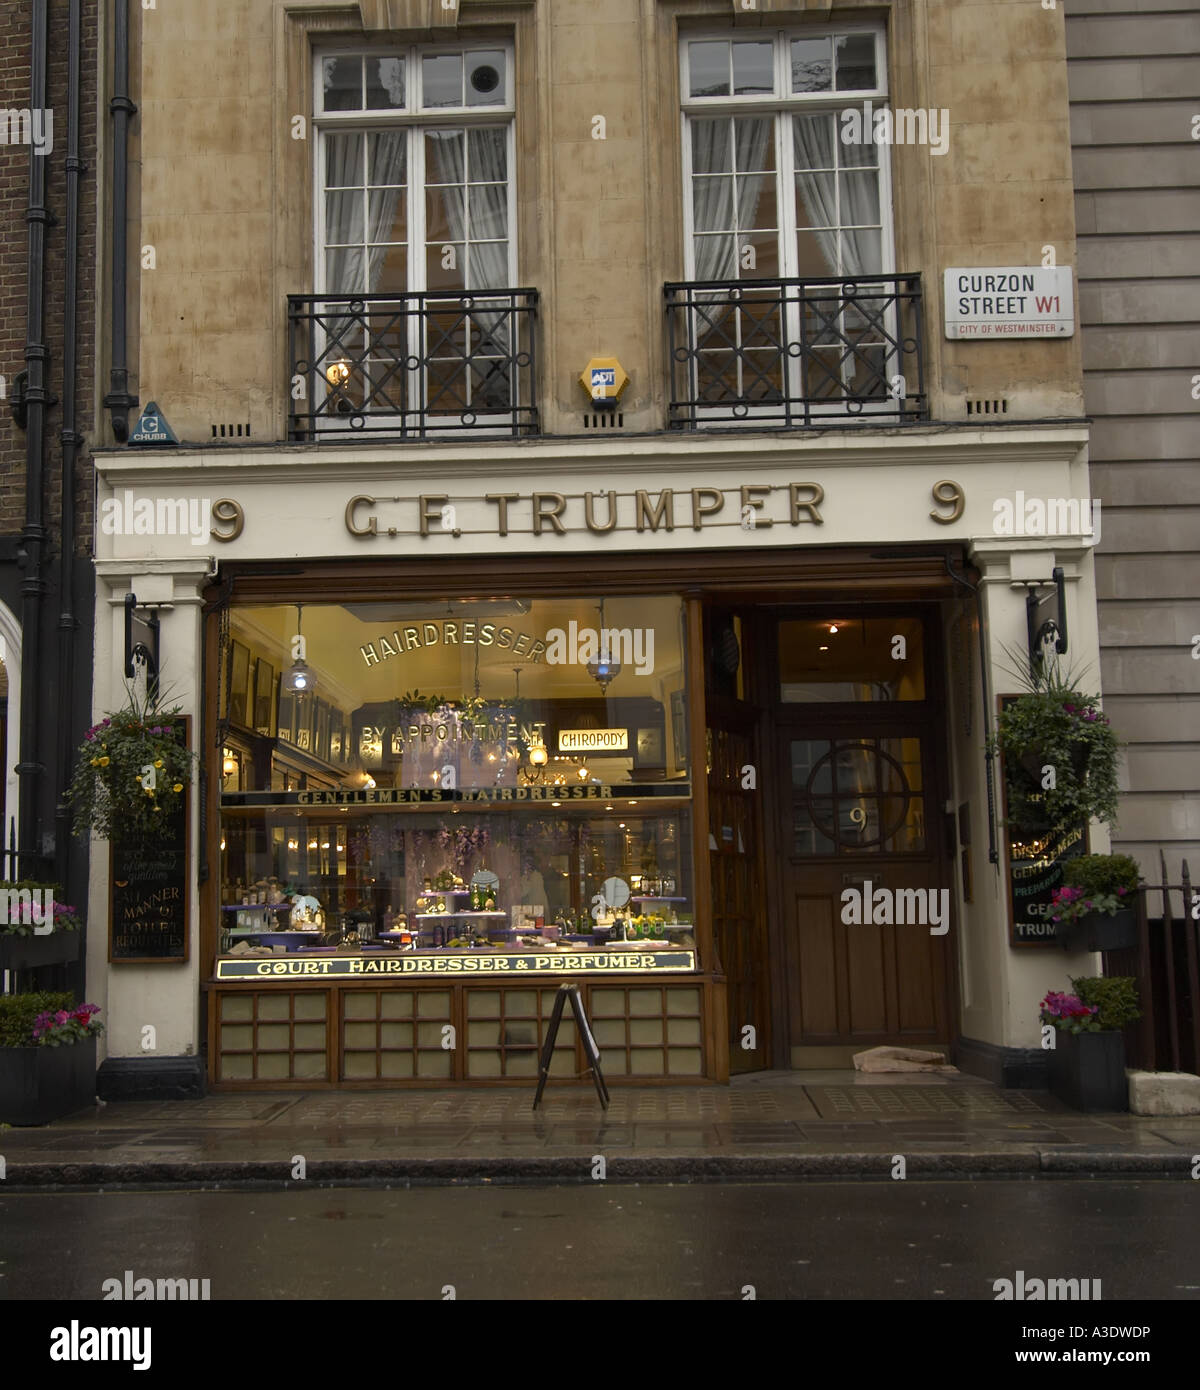 Geo Trumper le meilleur établissement traditionnel messieurs s salon de coiffure à Londres Curzon Street Banque D'Images